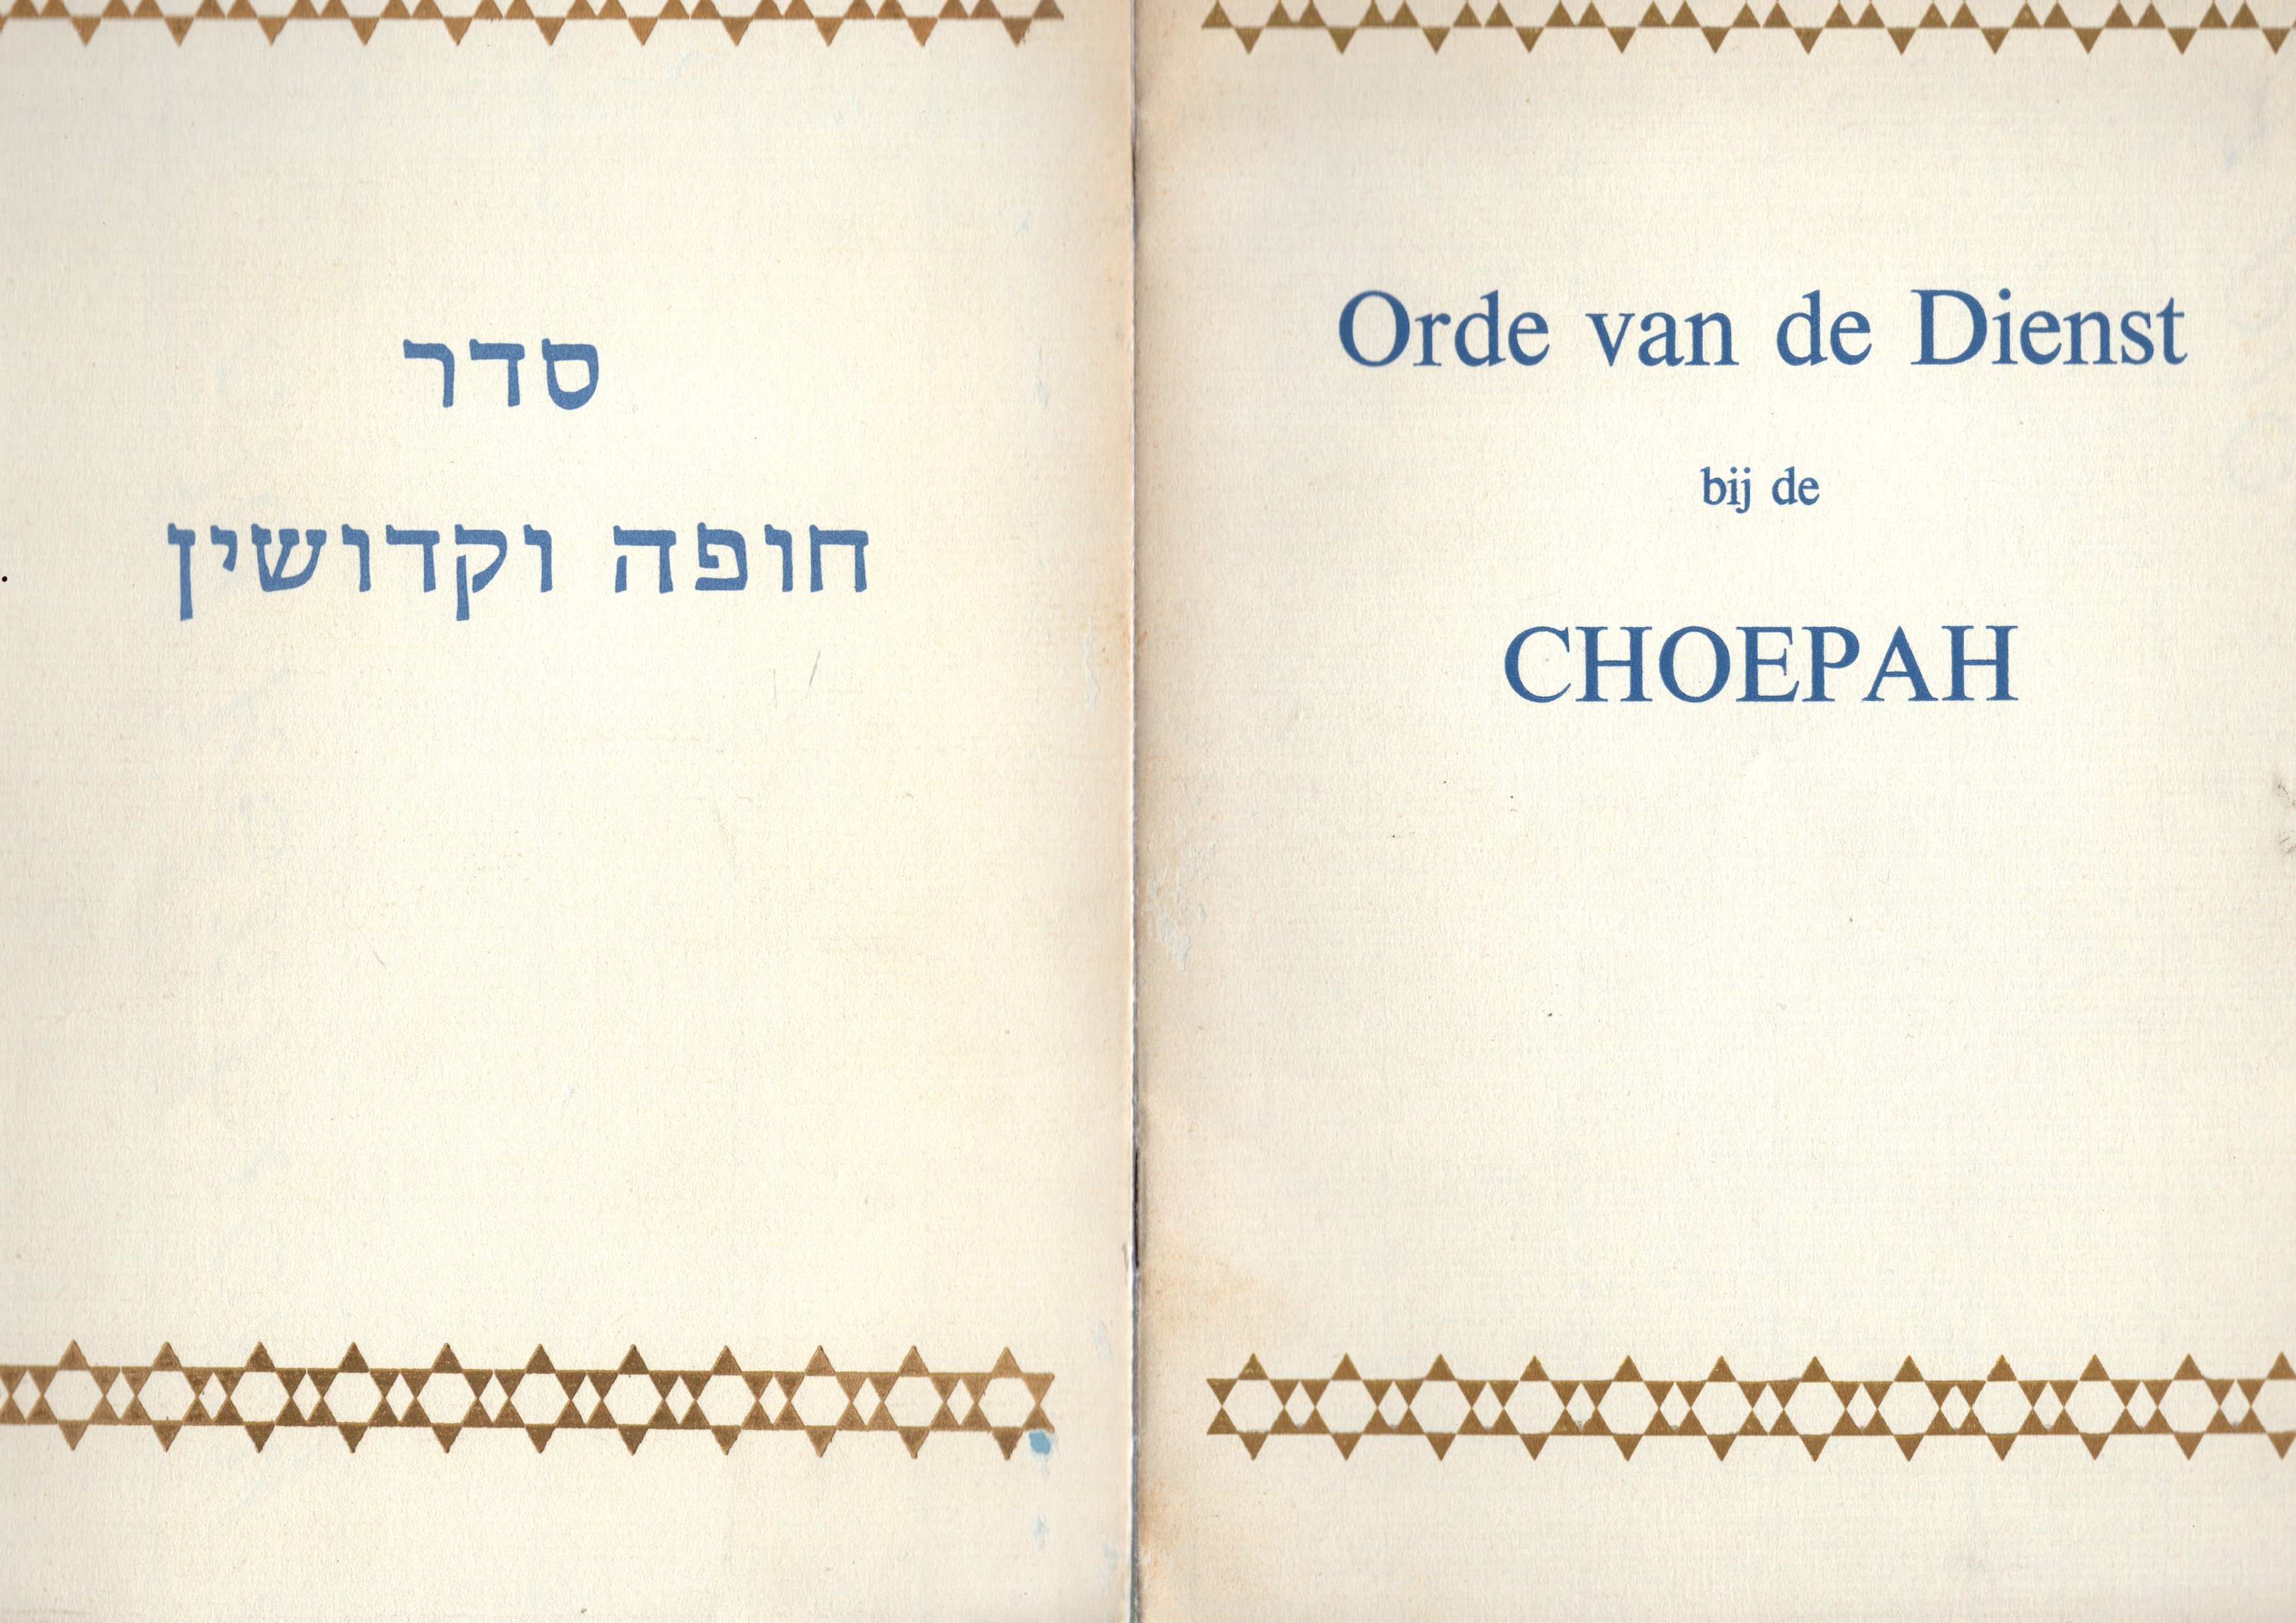  - Orde van dienst bij de Choepah. Tekst in Nederlands en Hebreeuws